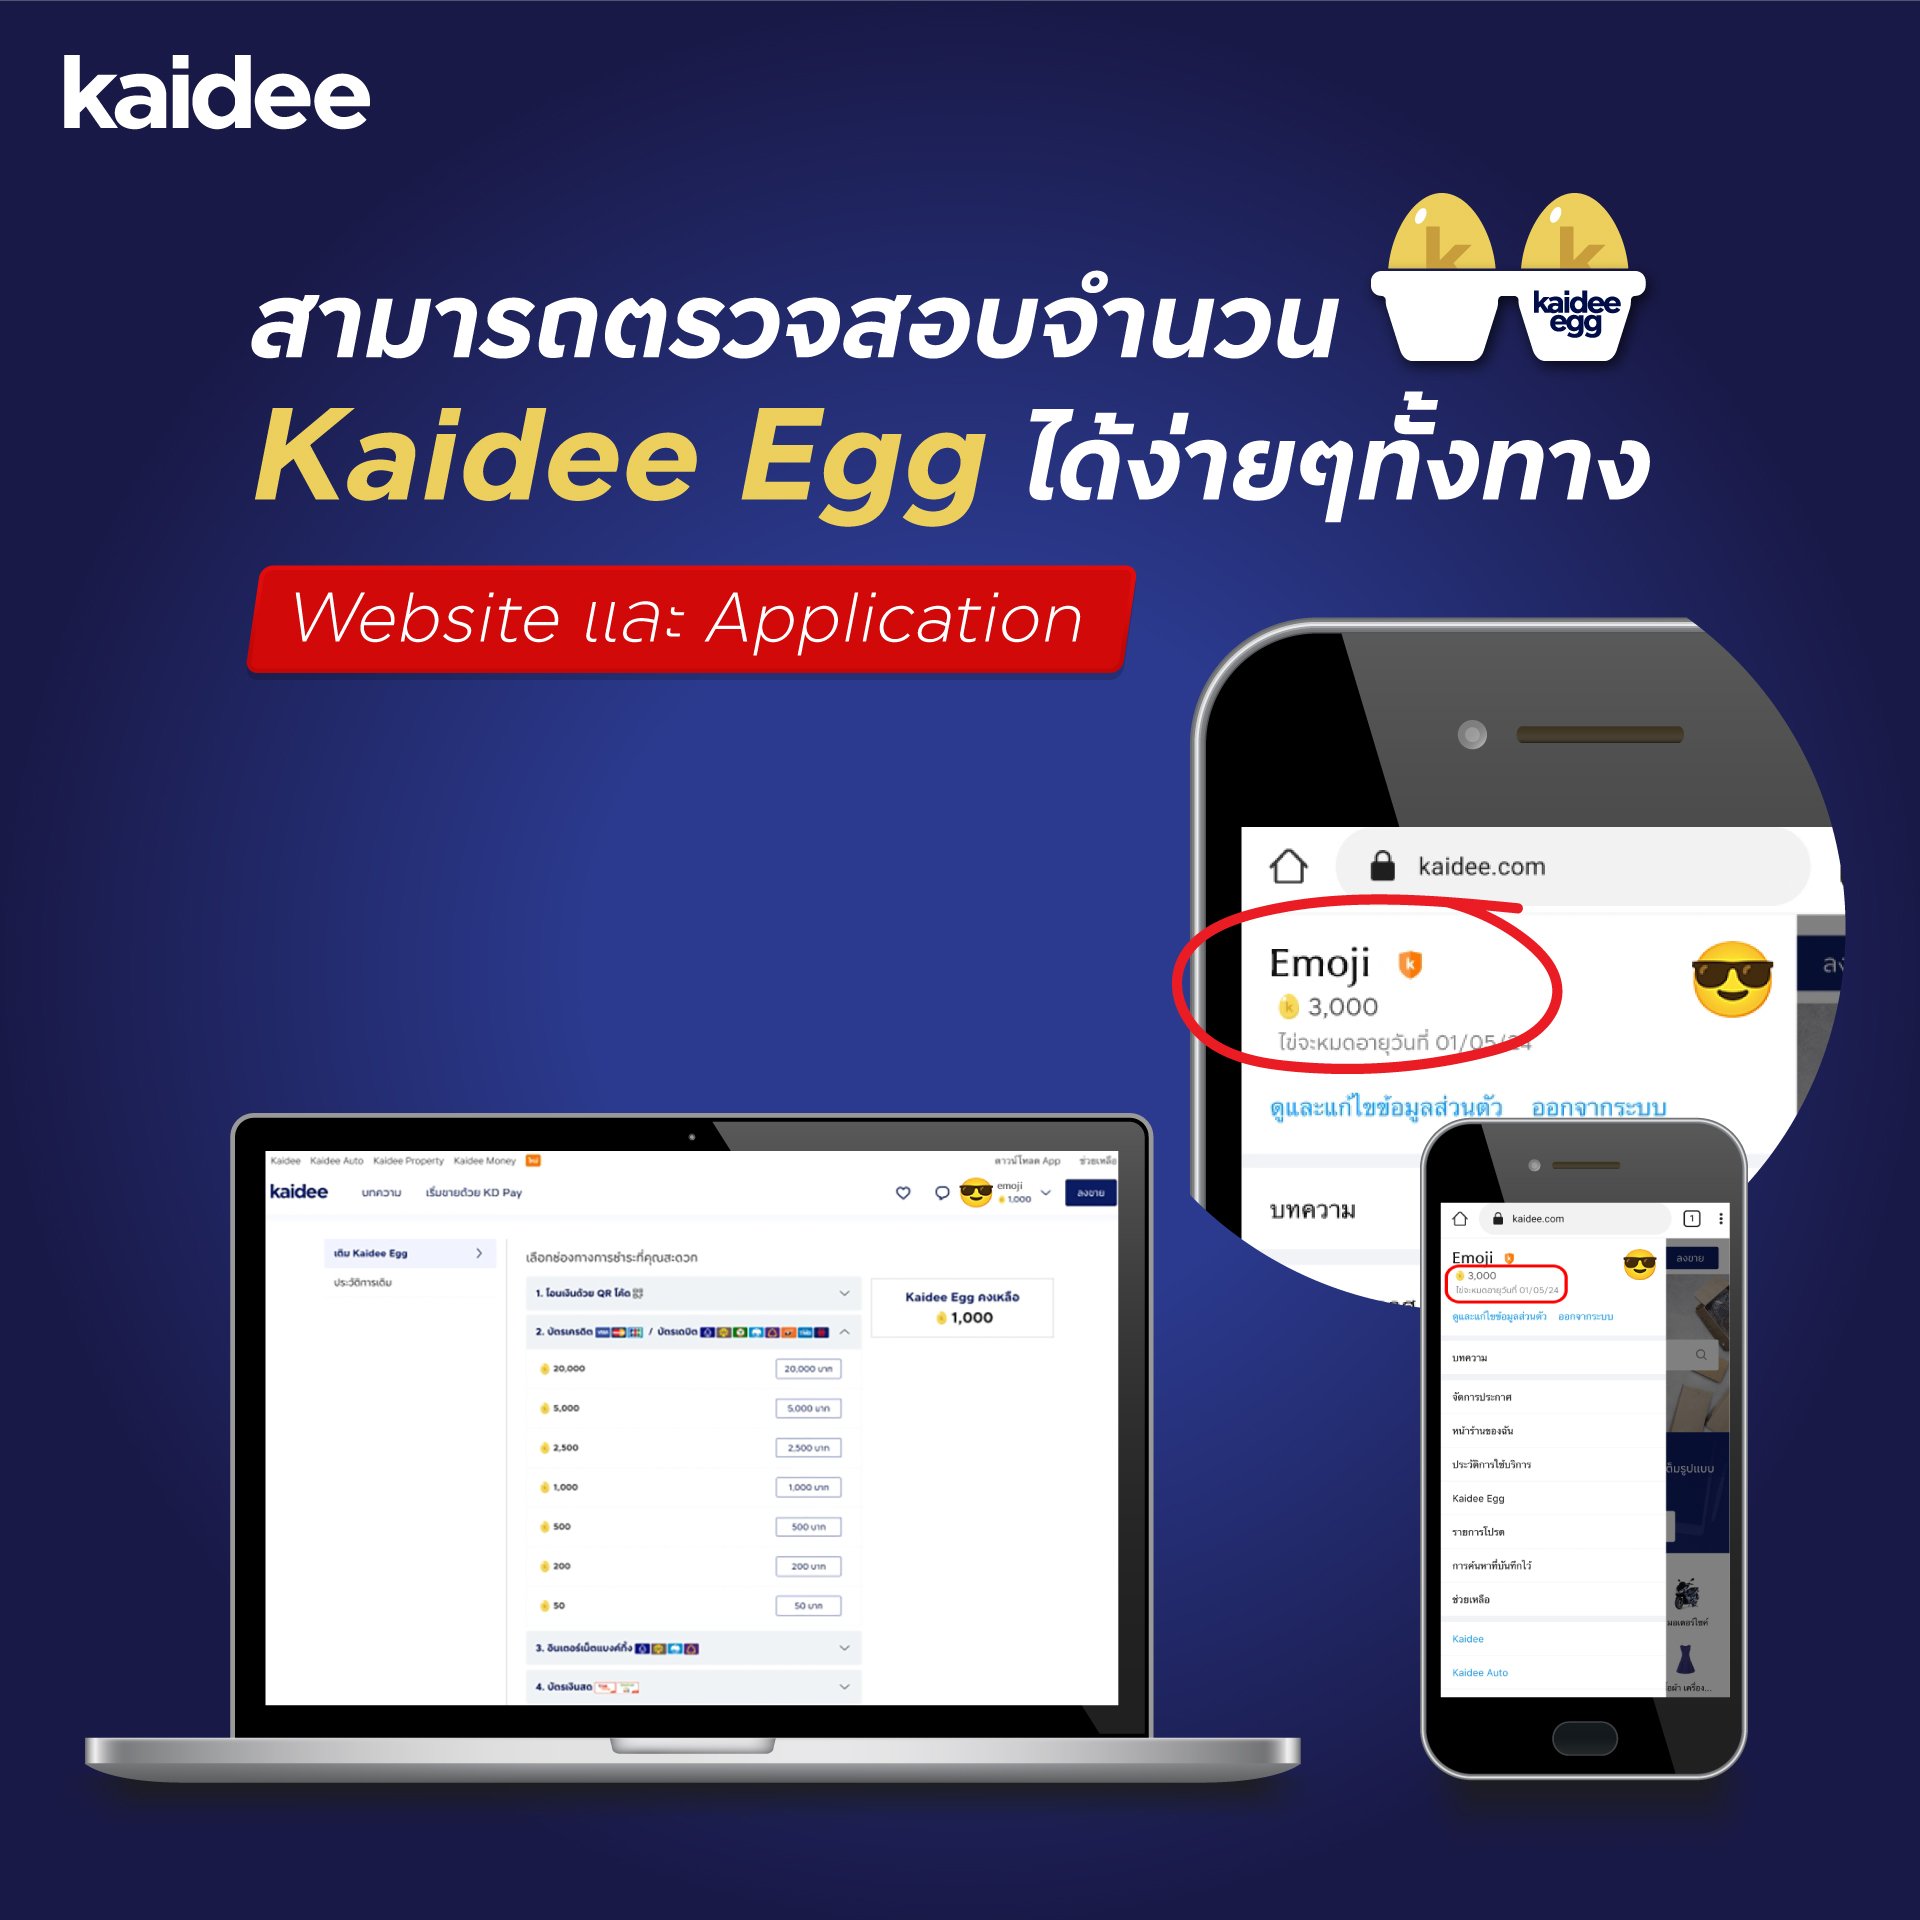 ตรวจสอบจำนวน Kaidee Egg คงเหลือได้ง่ายๆผ่านทาง Website และ Application